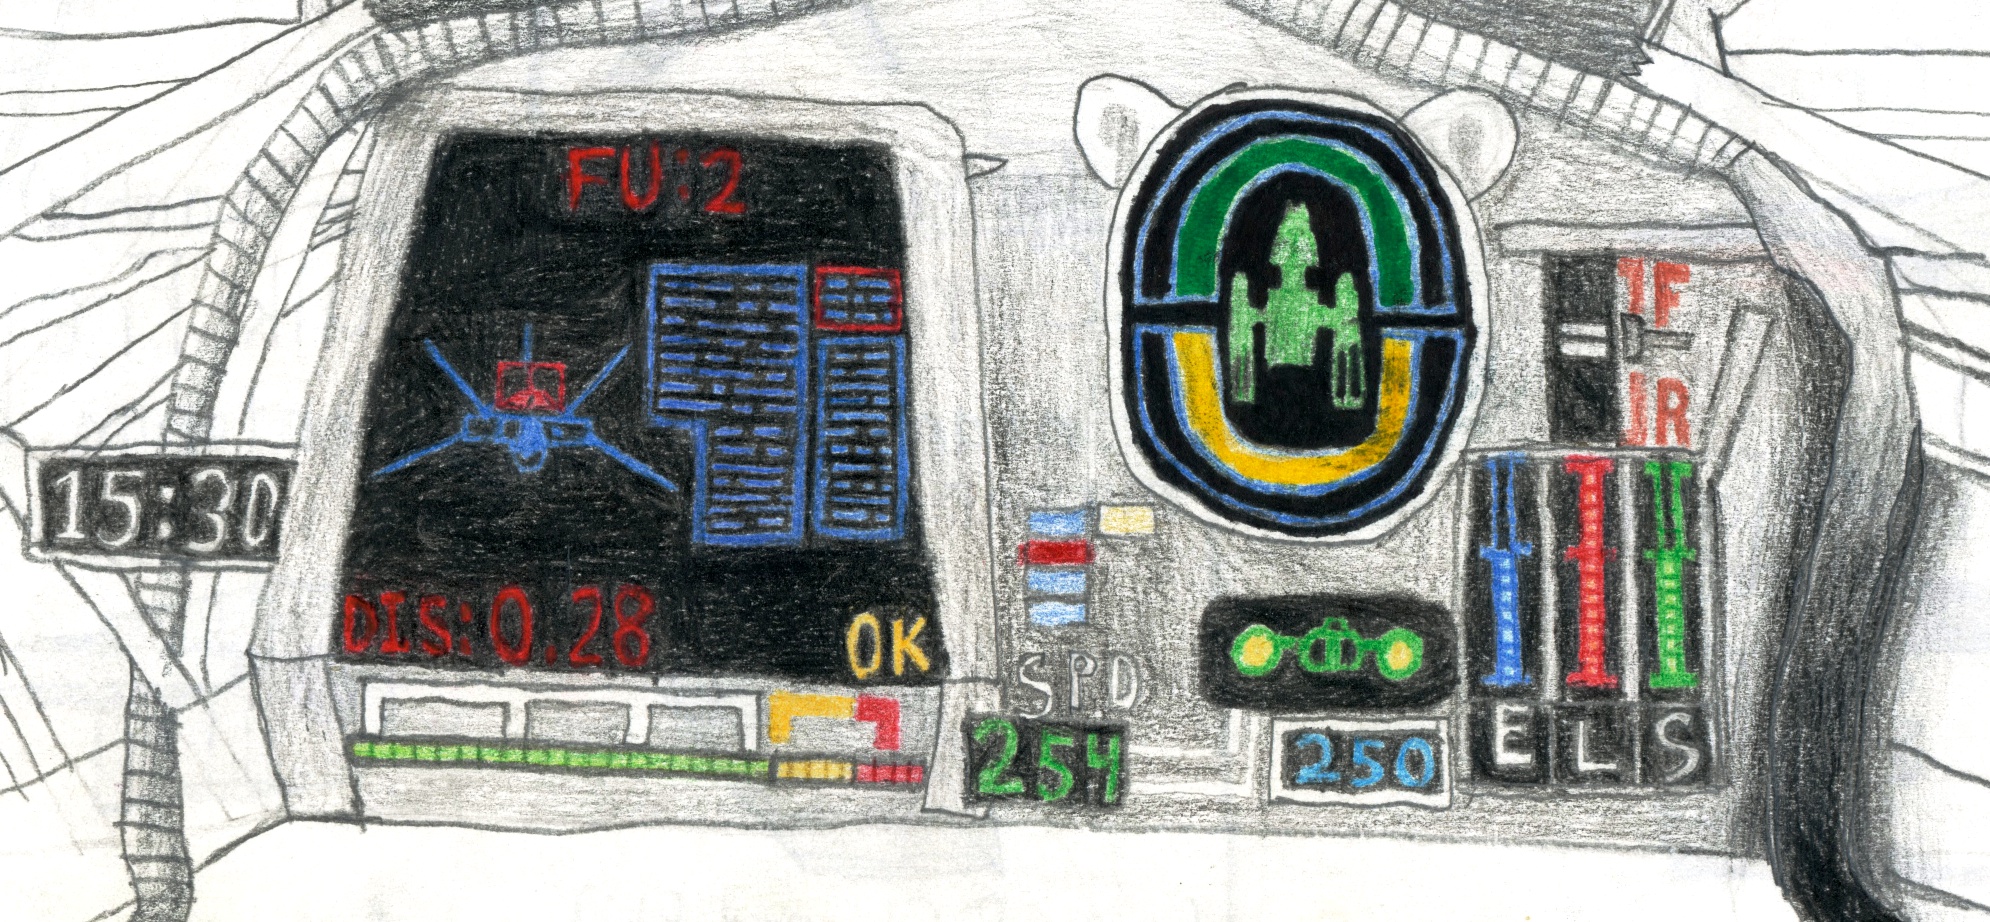 Star Wars Epic Scene - Cockpit Panel Detail